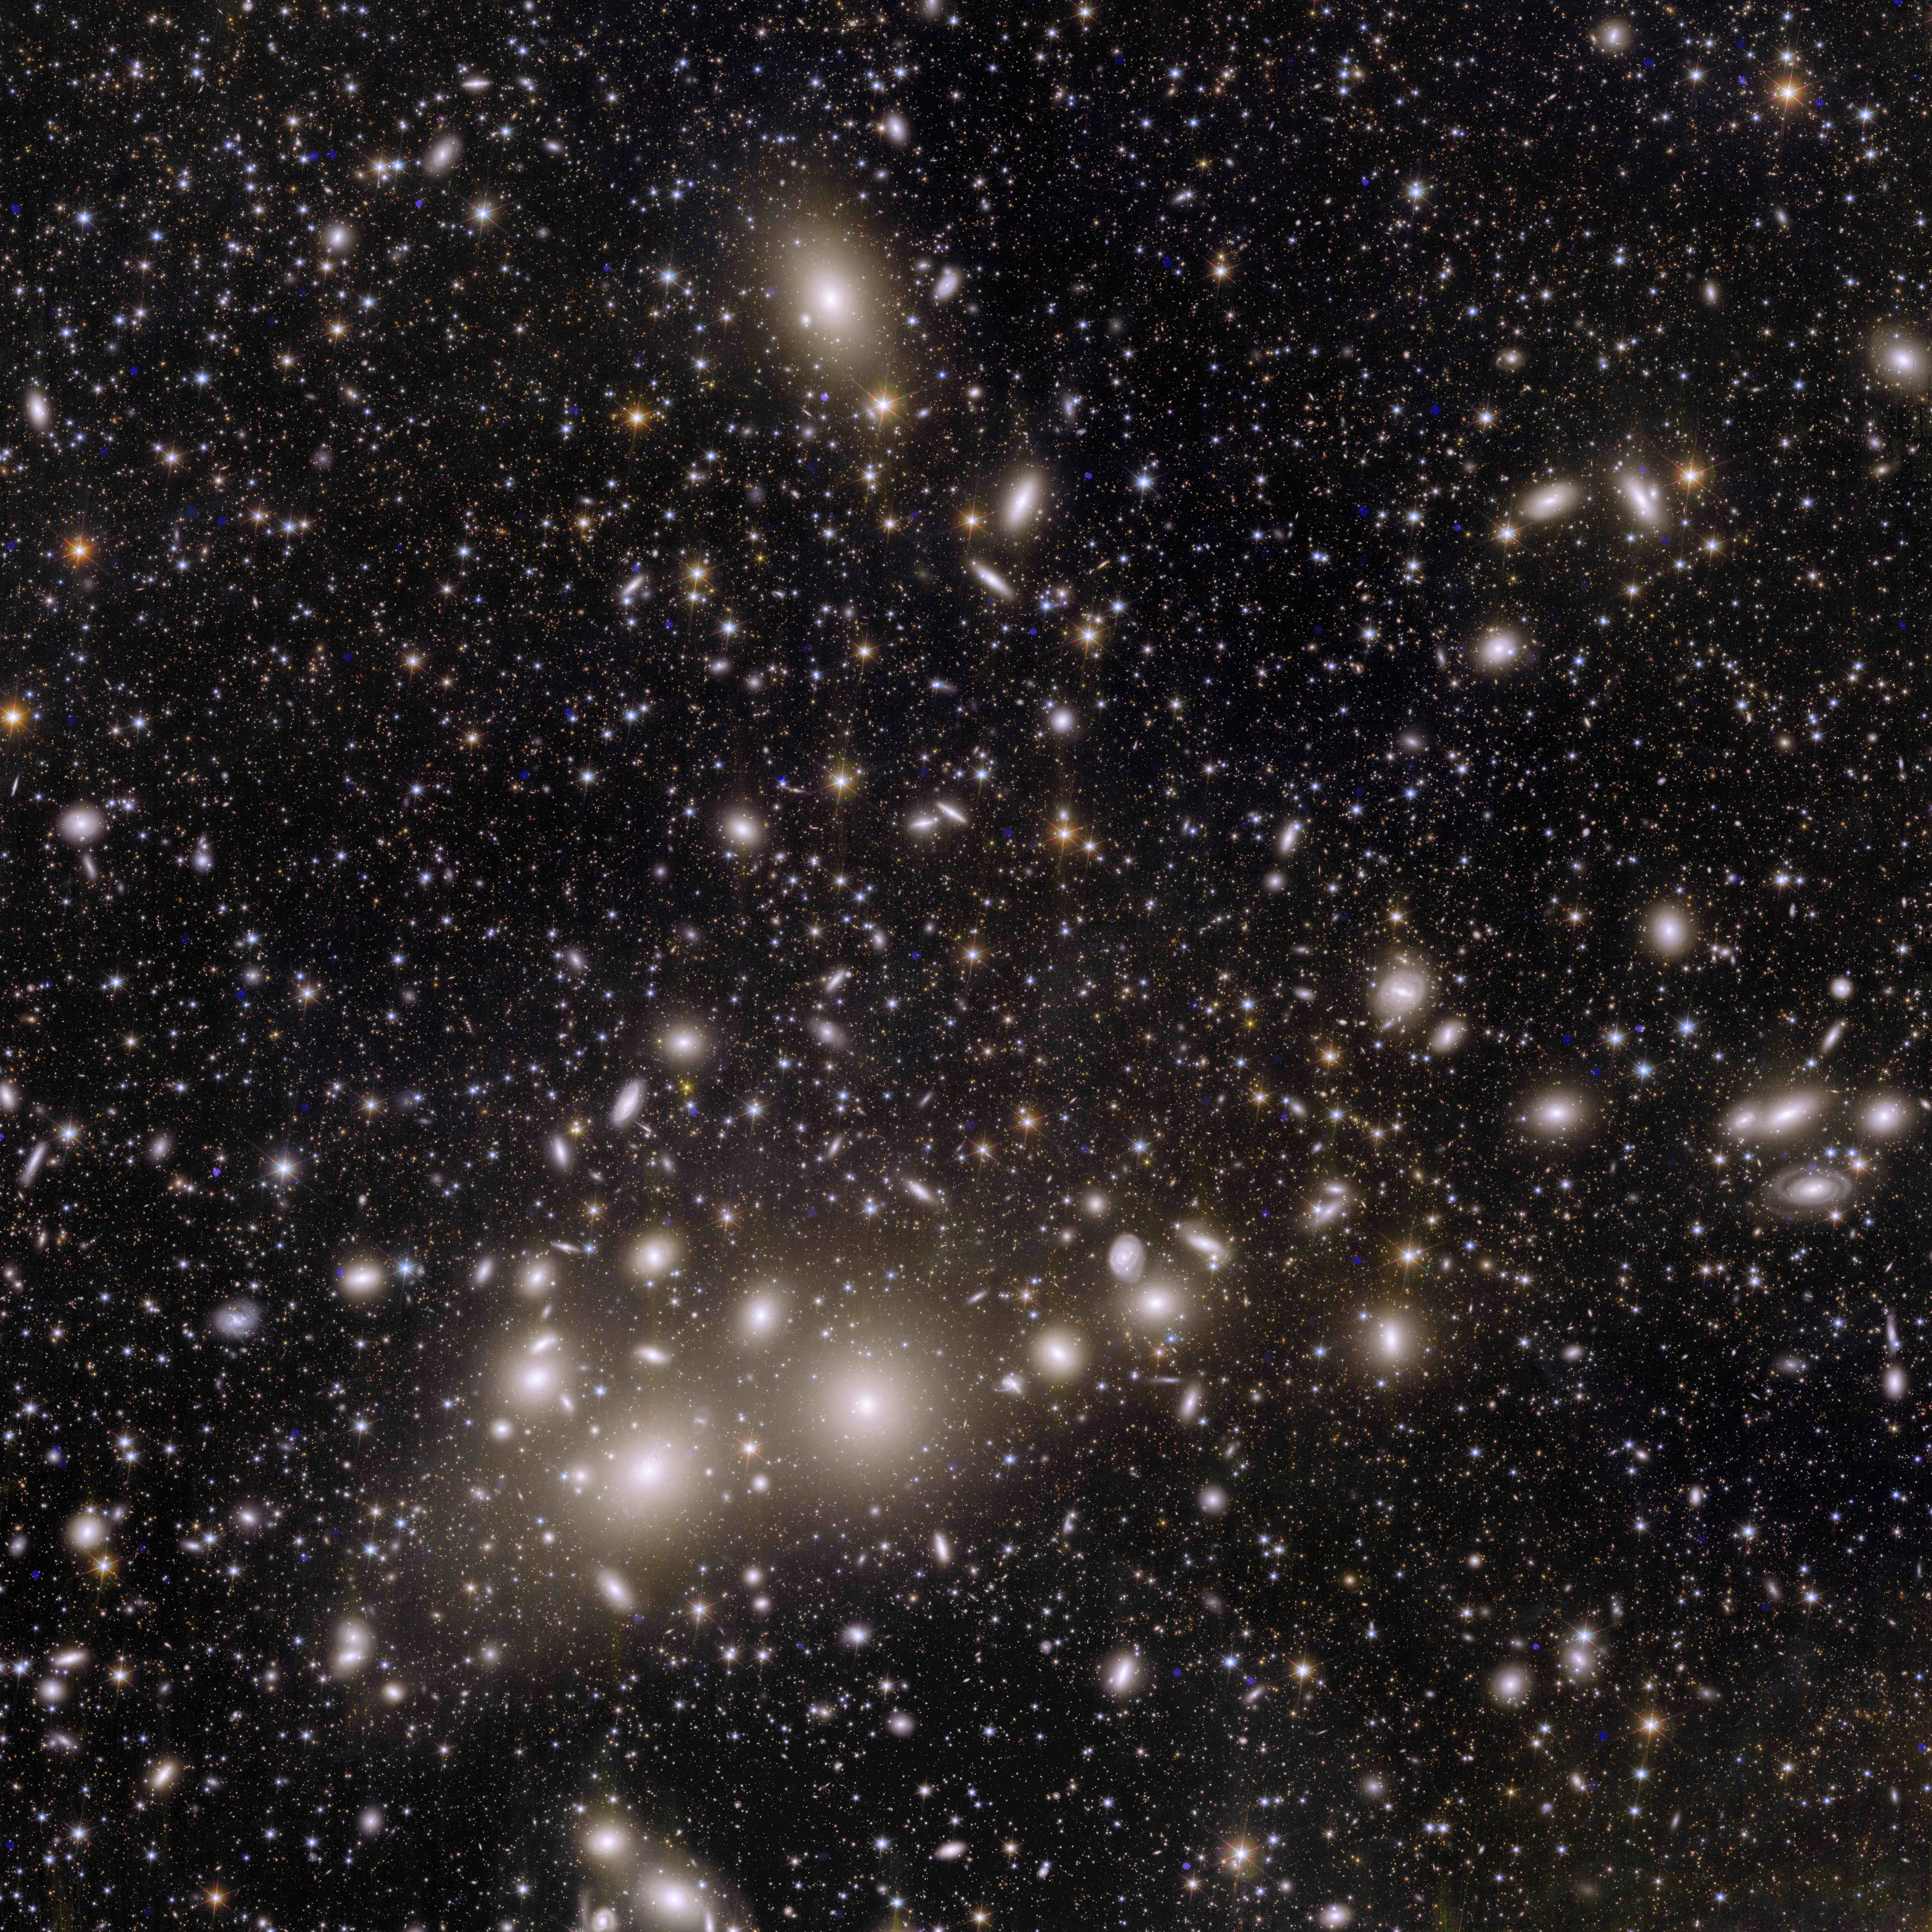 这张图像展现了距离地球约2.4亿光年的英仙座星系团，其中包含约1,000个星系，以及背景中更遥远的星系，总数超过10万个以上。其中许多光线微弱的星系距离我们超过100亿光年，在之前是根本无法看见的。而现在天文学家可以开始记录并绘製这些星系的形态与分布，将能更了解暗物质是如何影响宇宙演化过程，并塑造出现今宇宙的形态与样子。This incredible snapshot from Euclid is a revolution for astronomy. The image shows 1000 galaxies belonging to the Perseus Cluster, and more than 100 000 additional galaxies further away in the background, each containing up to hundreds of billions of stars.